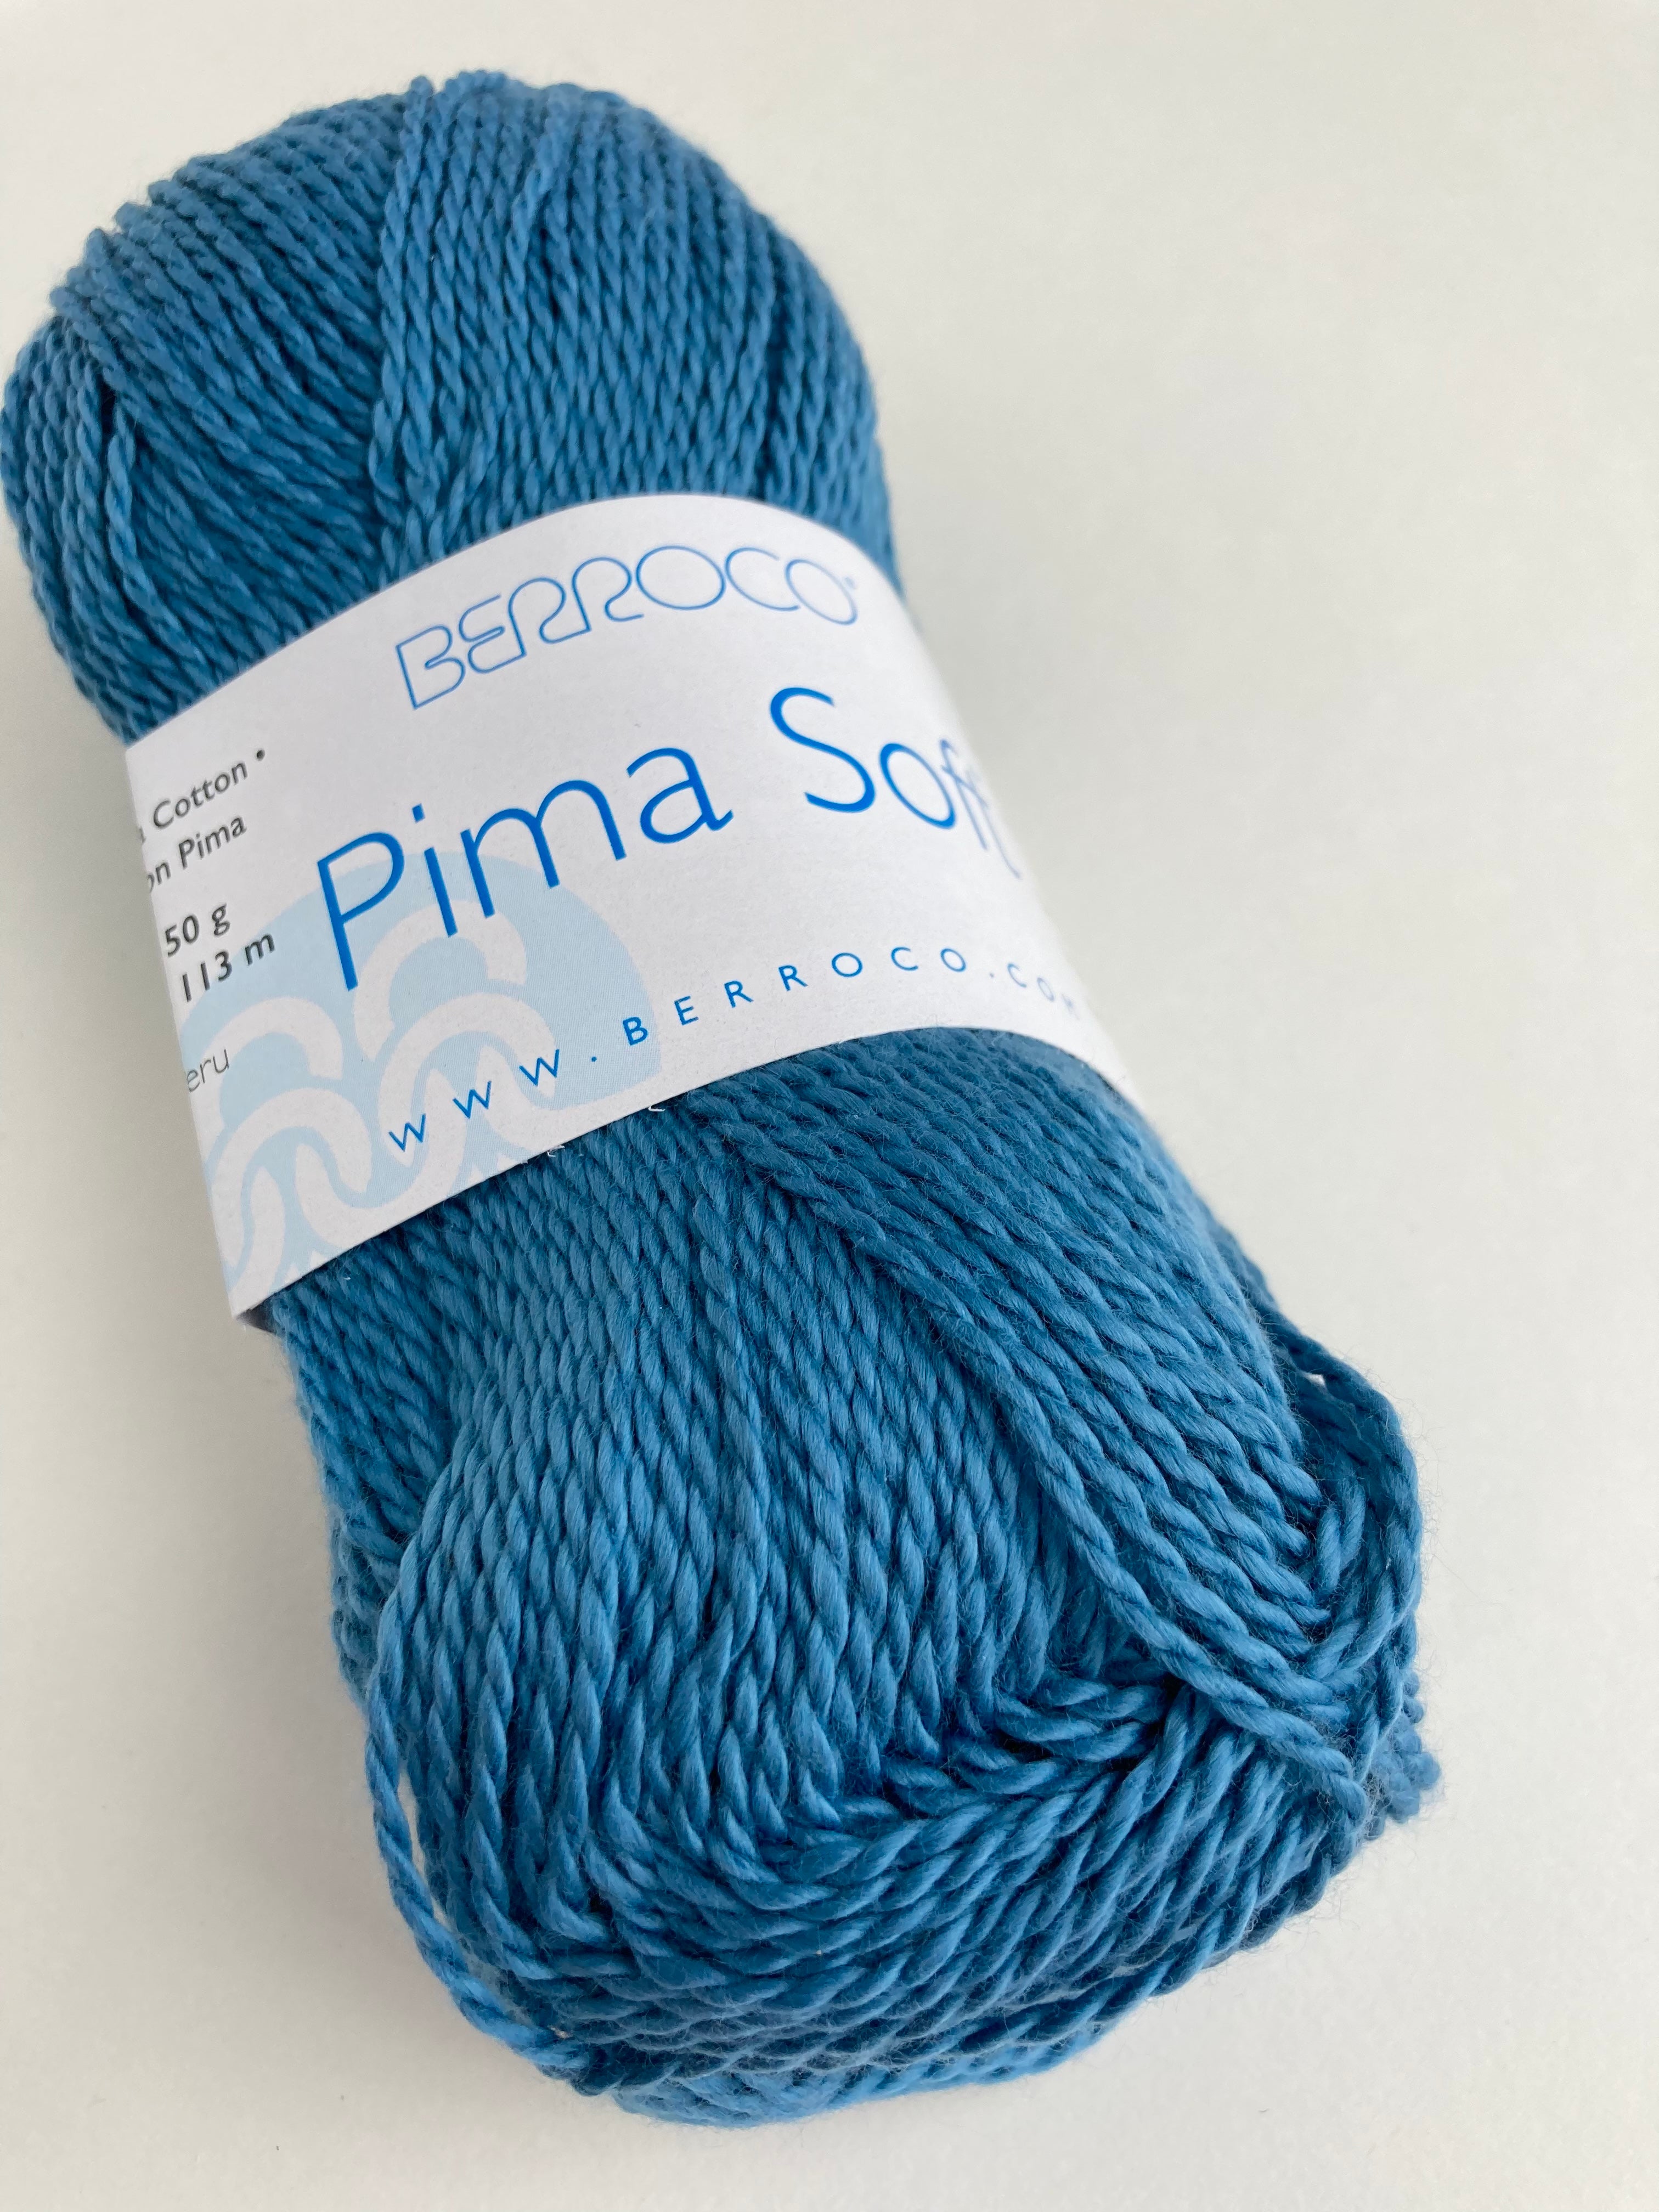 Aegean 4625 - Pima Soft from Berroco